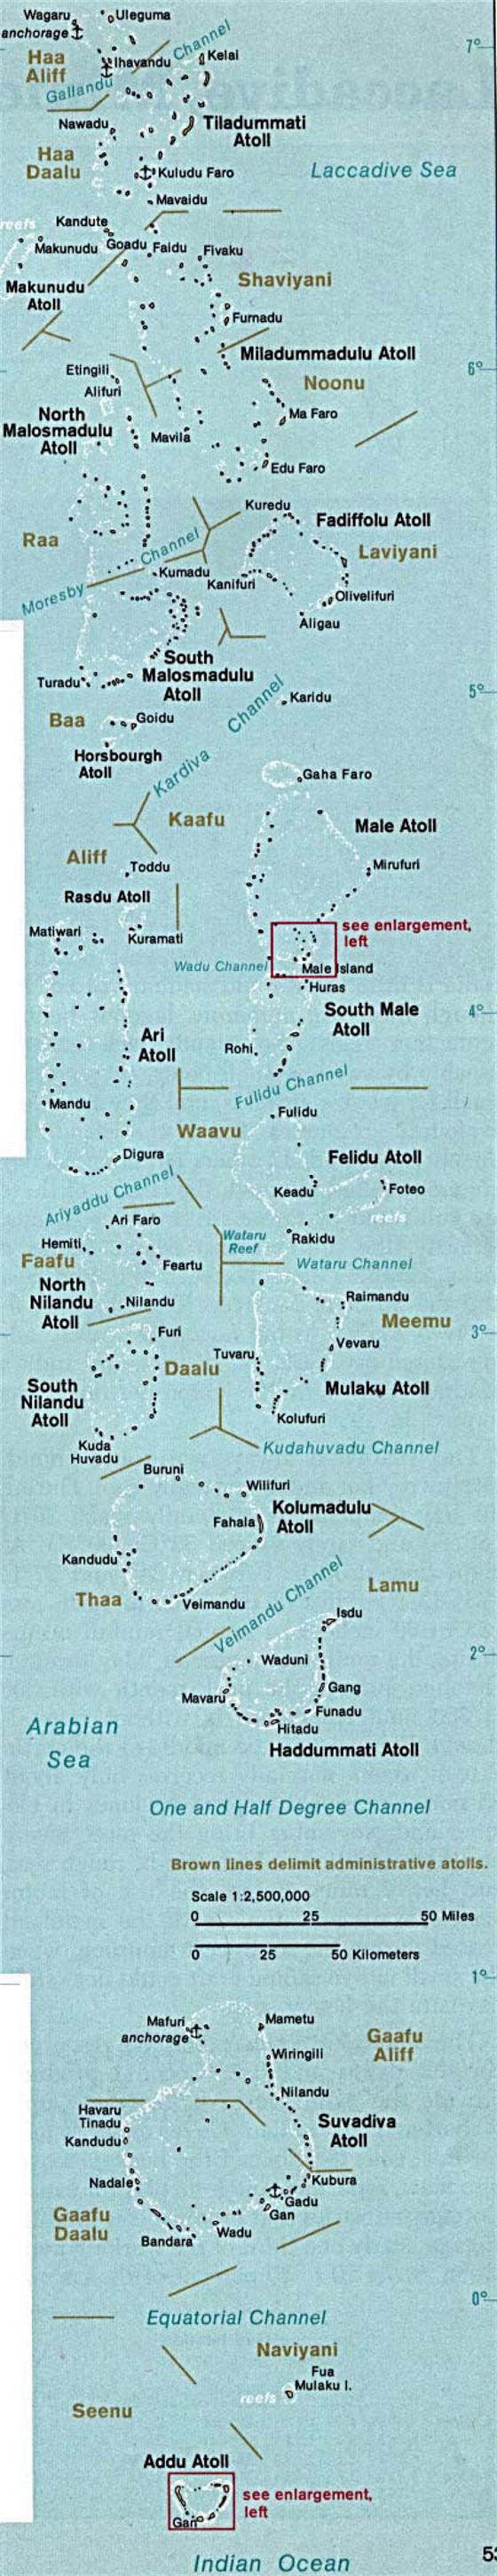 Detallado mapa de Maldivas - 1976